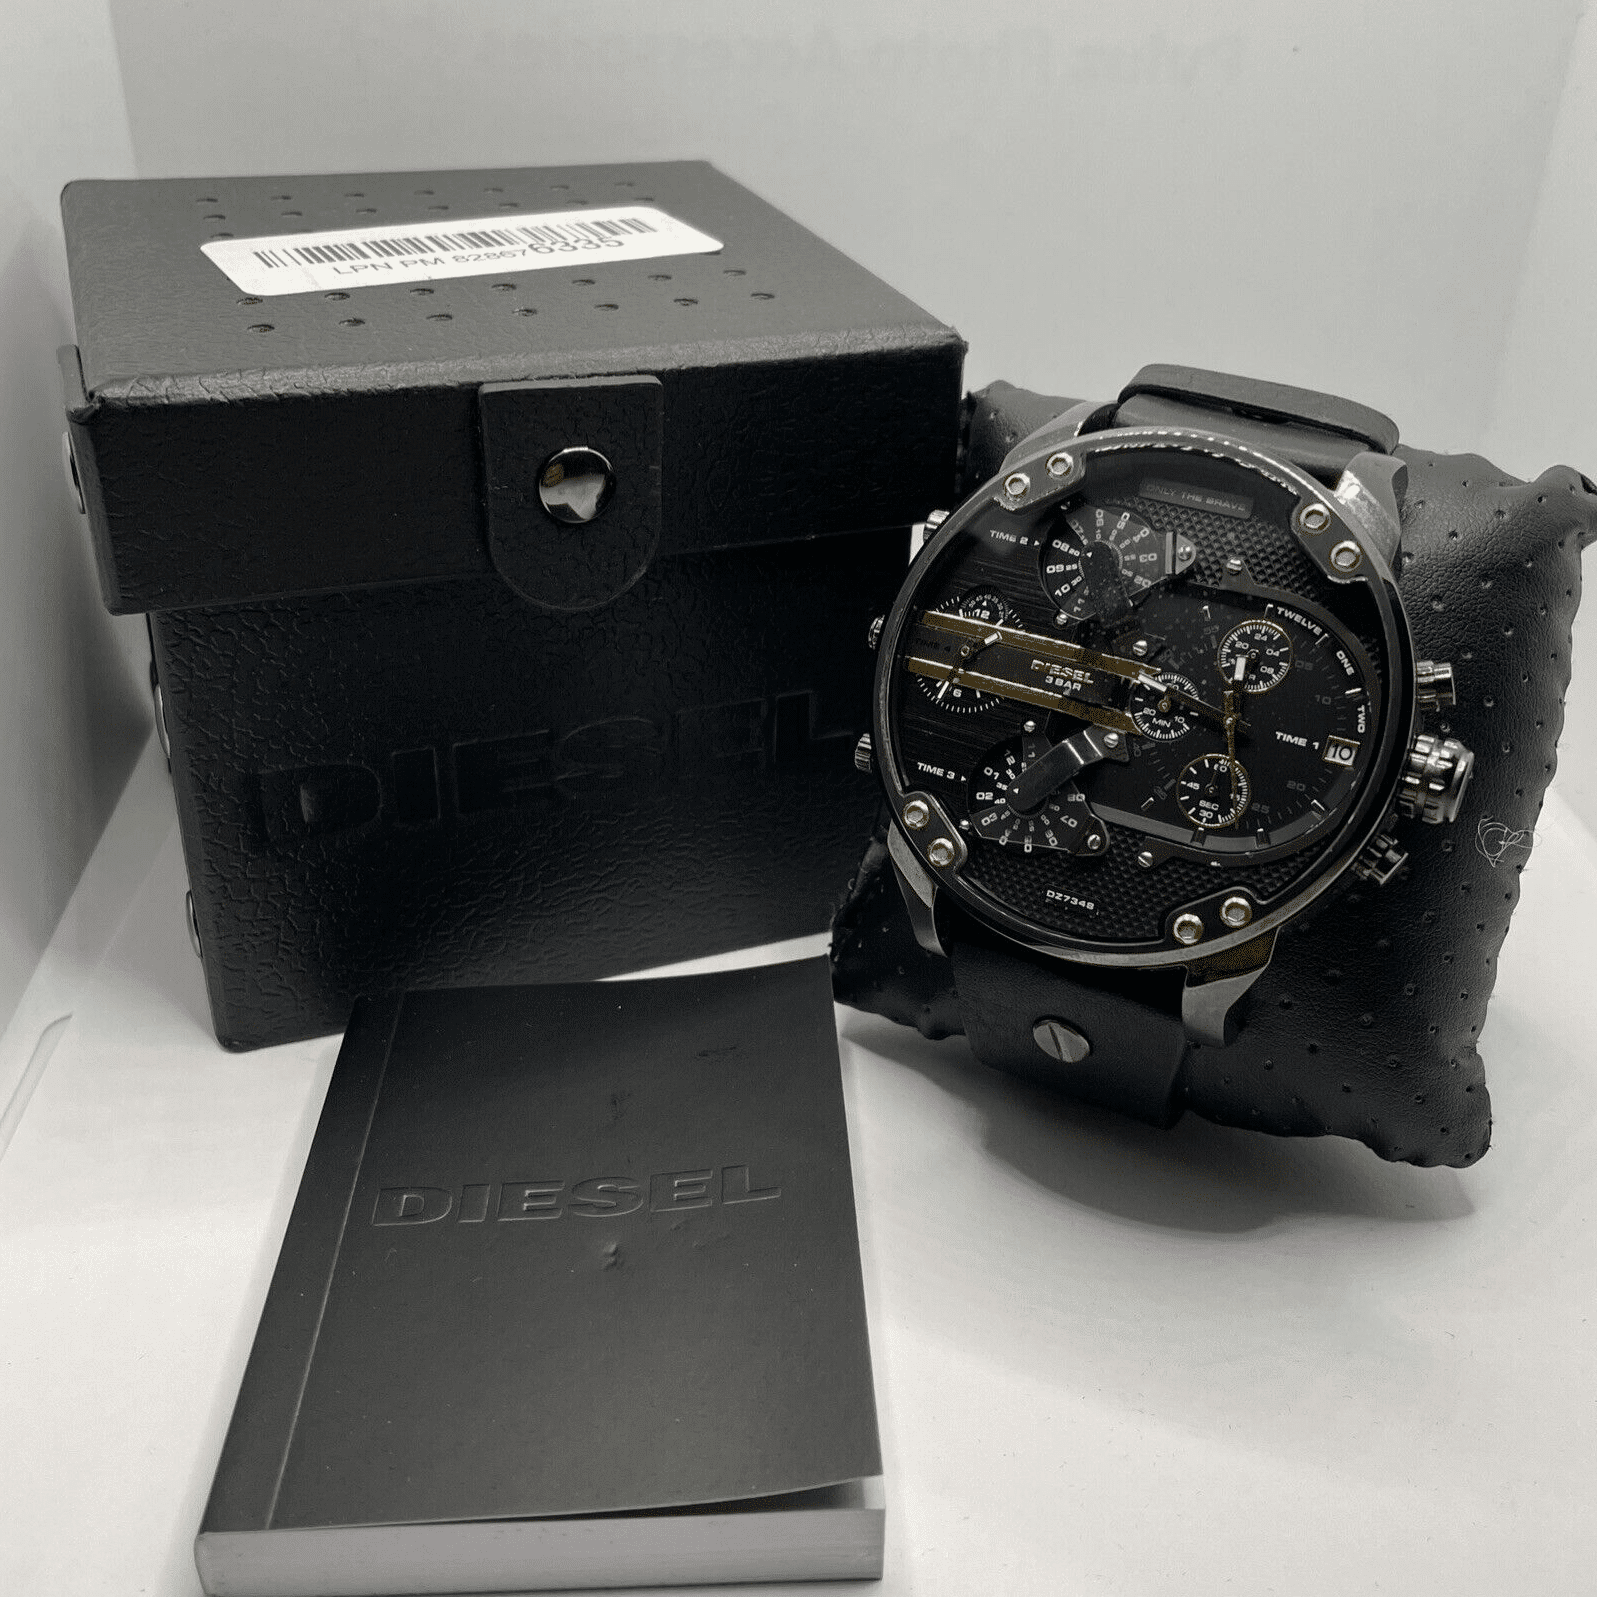 Reloj pulsera Diesel Mr. Daddy 2.0 DZ7395 de cuerpo color negro, analógico,  para hombre, fondo negro, con correa de acero inoxidable color negro,  agujas color negro y blanco, dial blanco, subesferas color